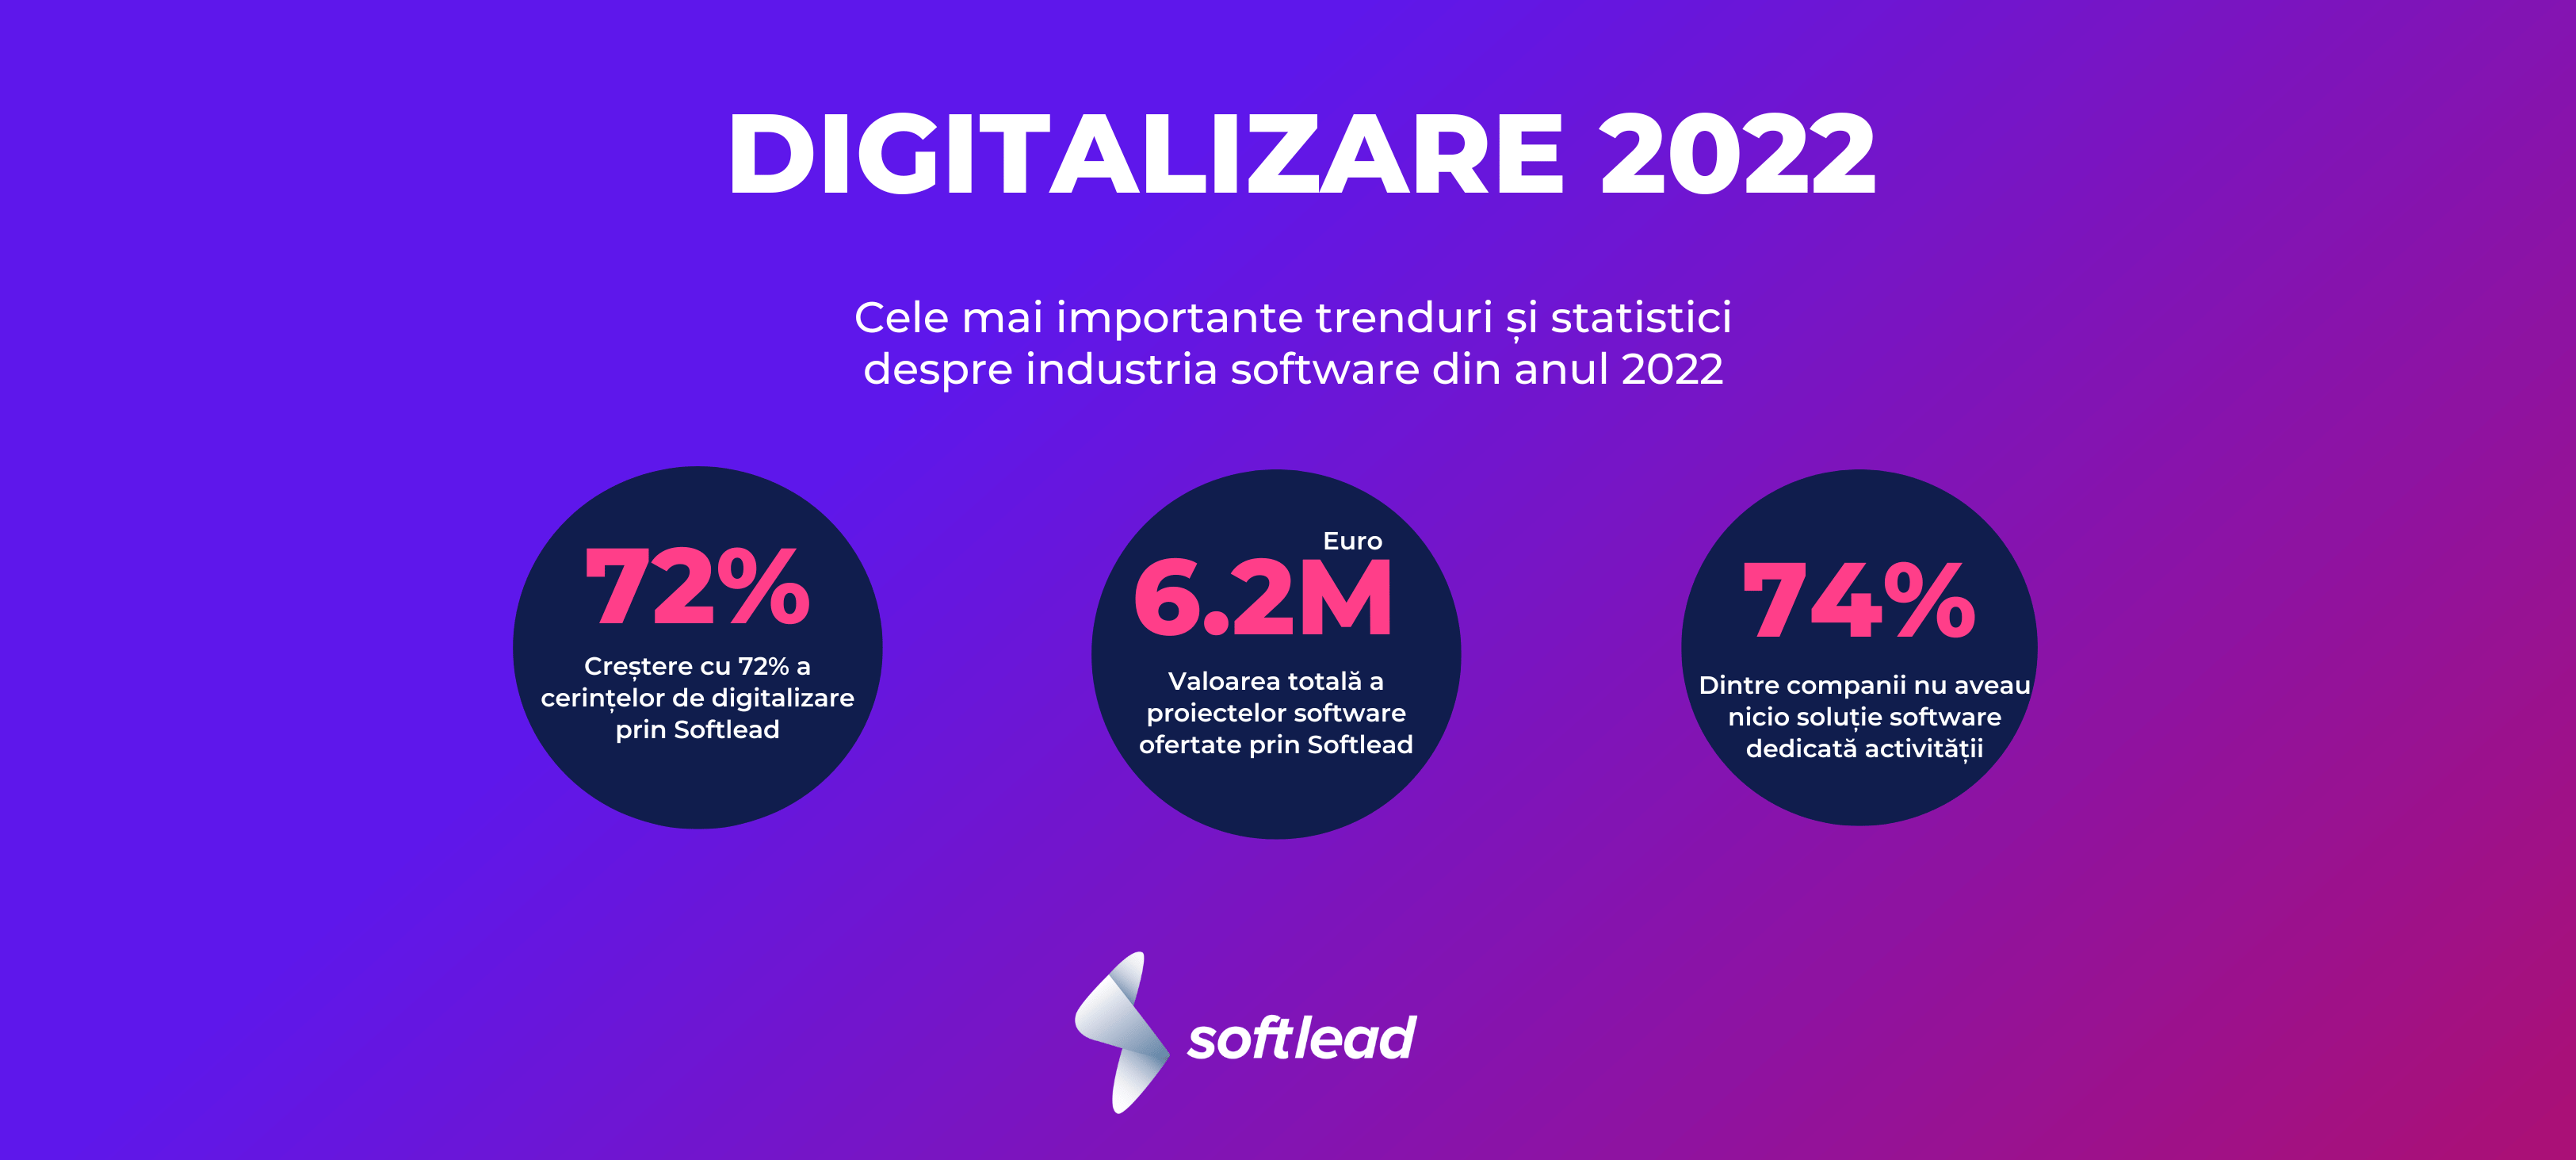 Softlead: Cum a arătat apetitul pentru digitalizare al companiilor din România în 2022?